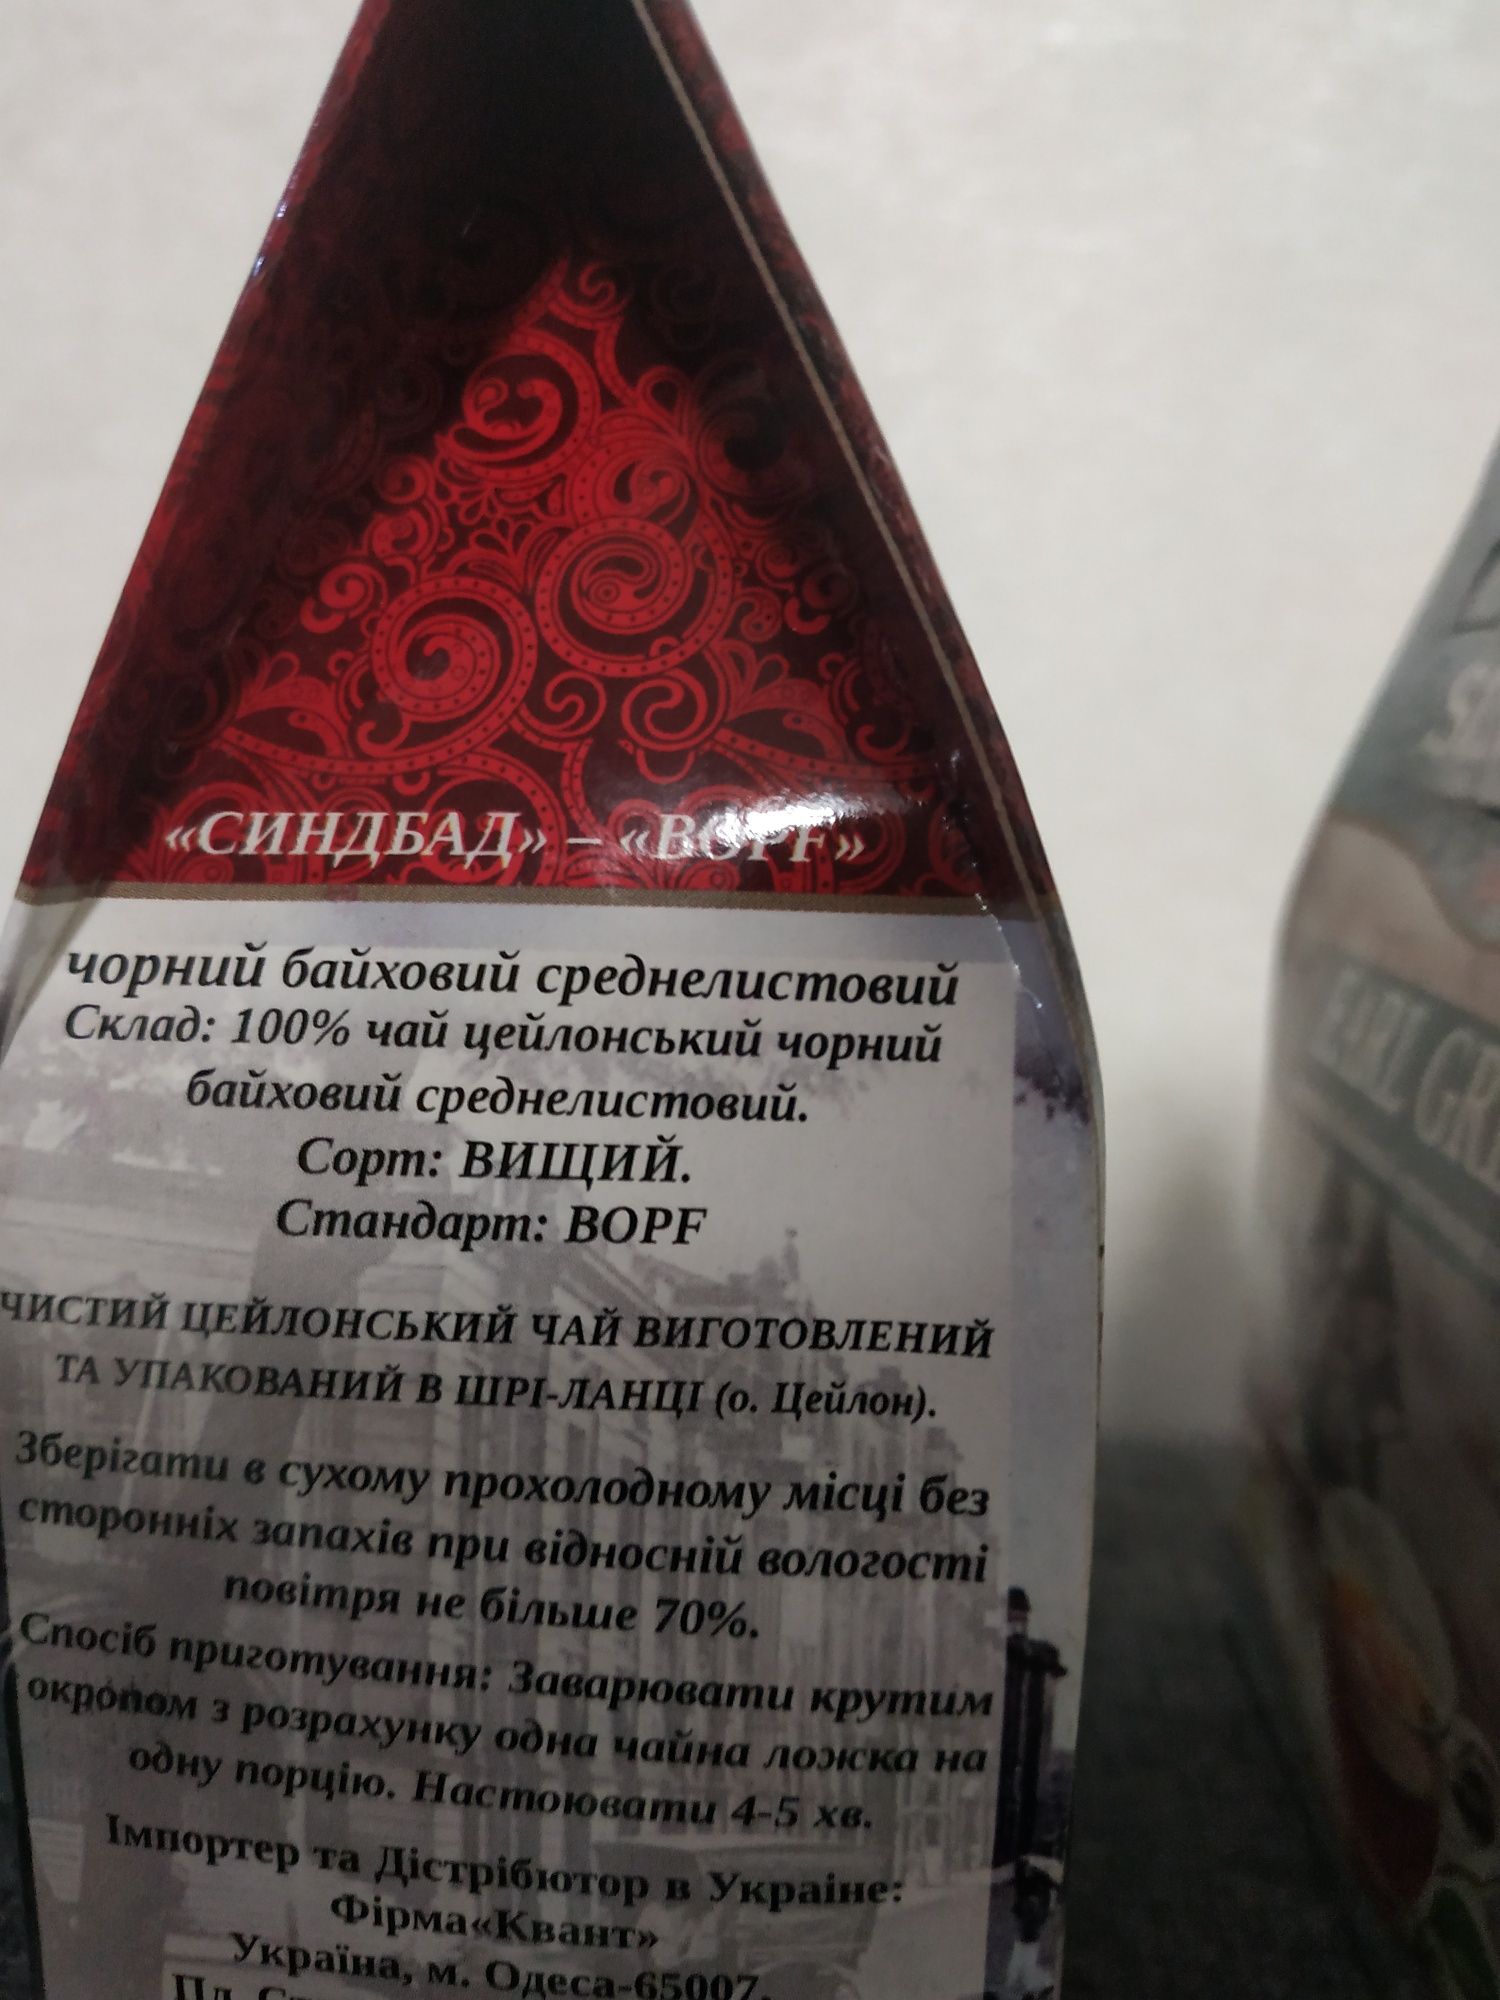 Чай Sindbad черный цейлонский 150 грамм  среднелистовой